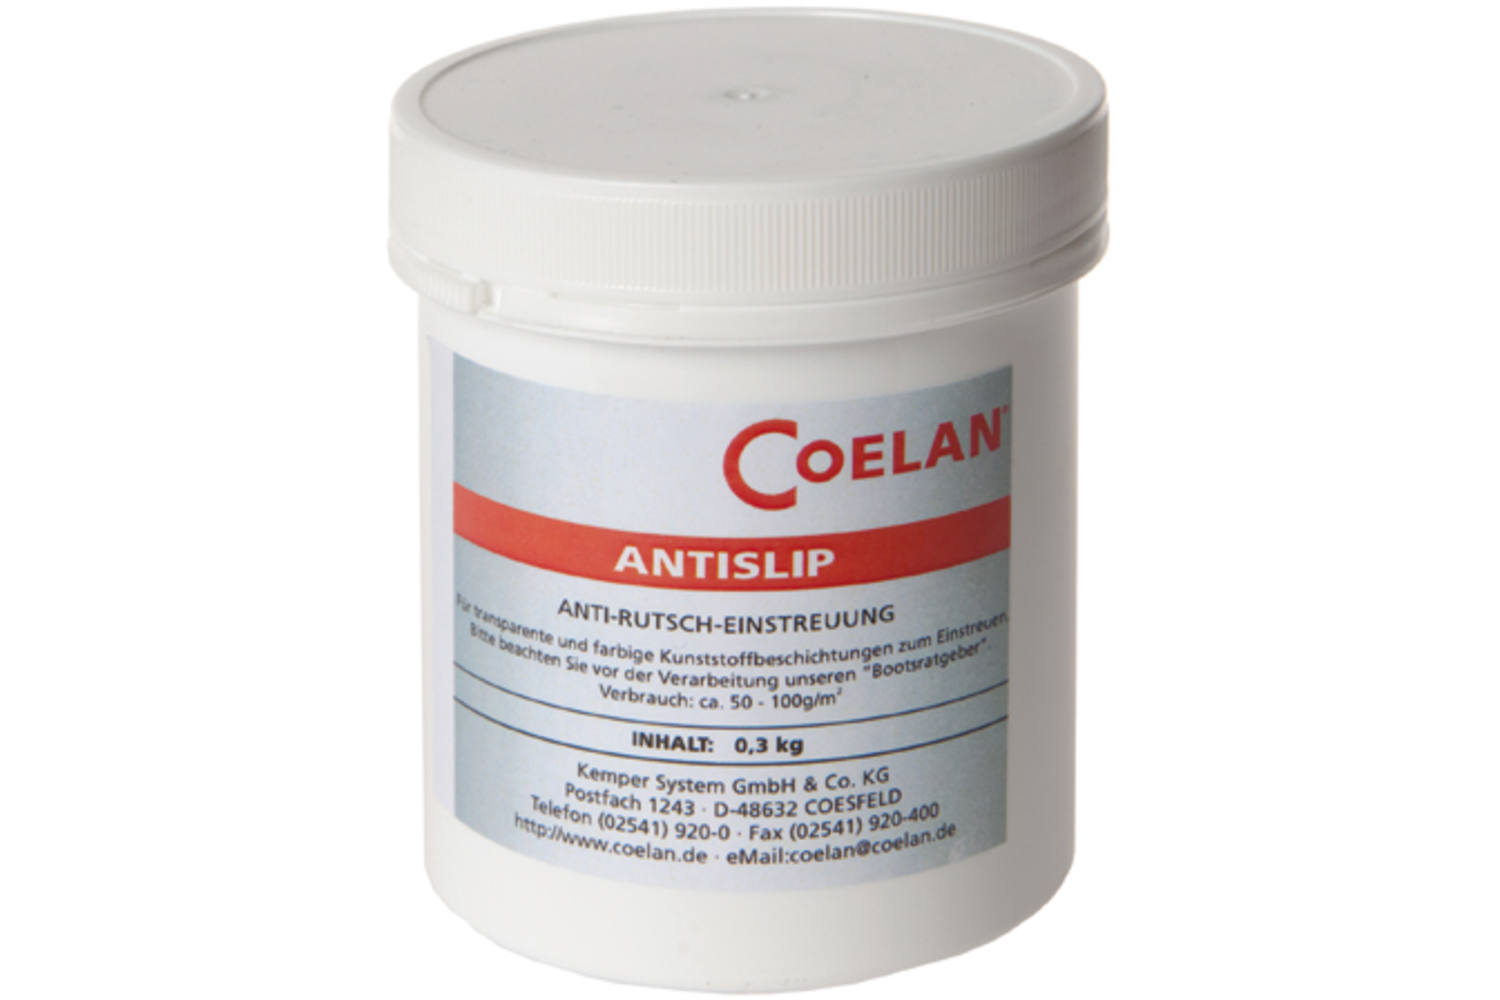 Coelan Anti-slip strooisel - 0.3kg